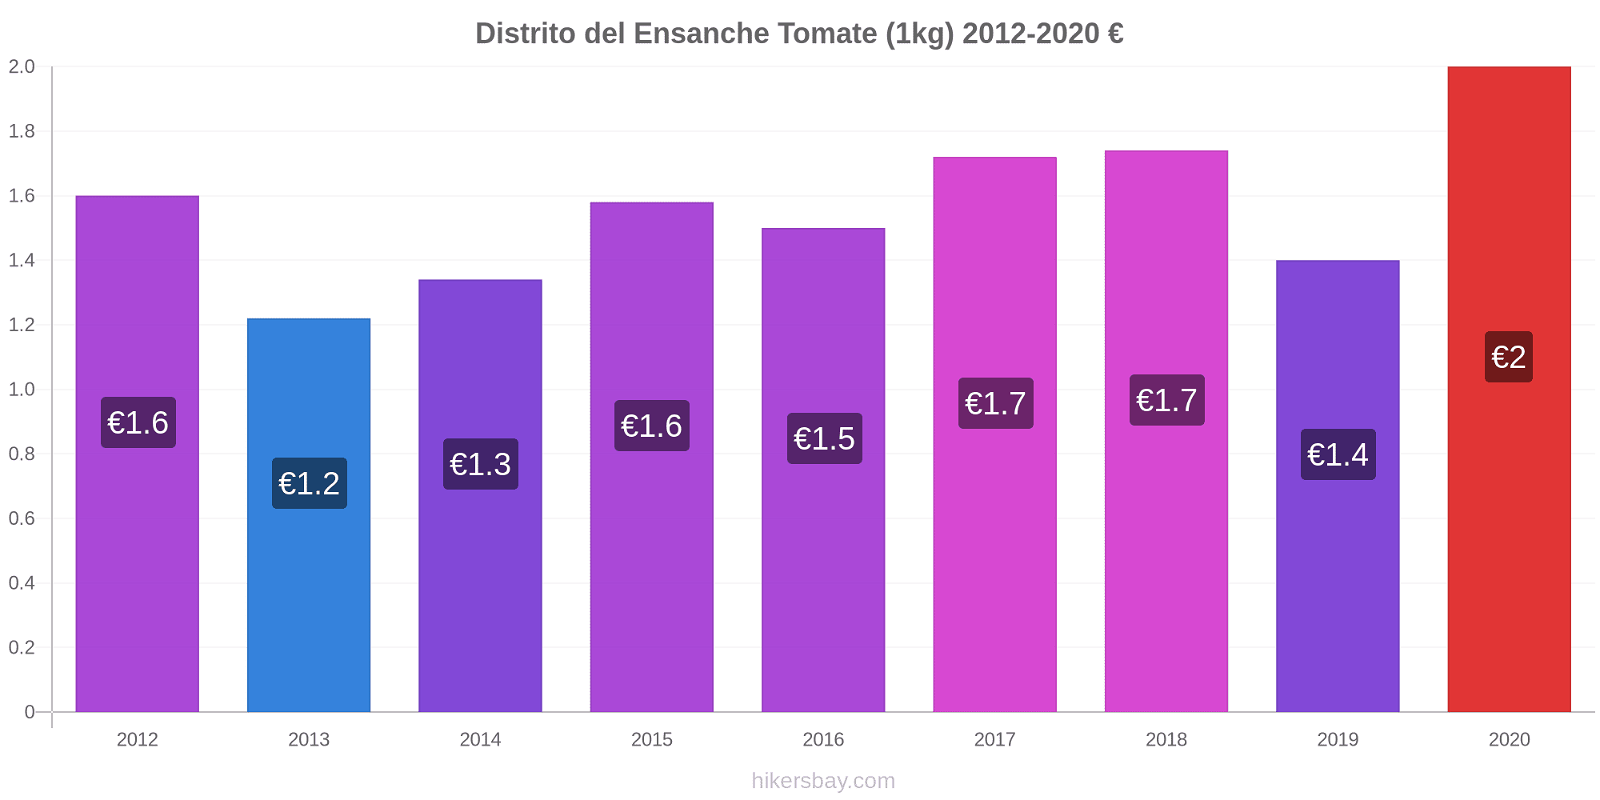 Distrito del Ensanche cambios de precios Tomate (1kg) hikersbay.com